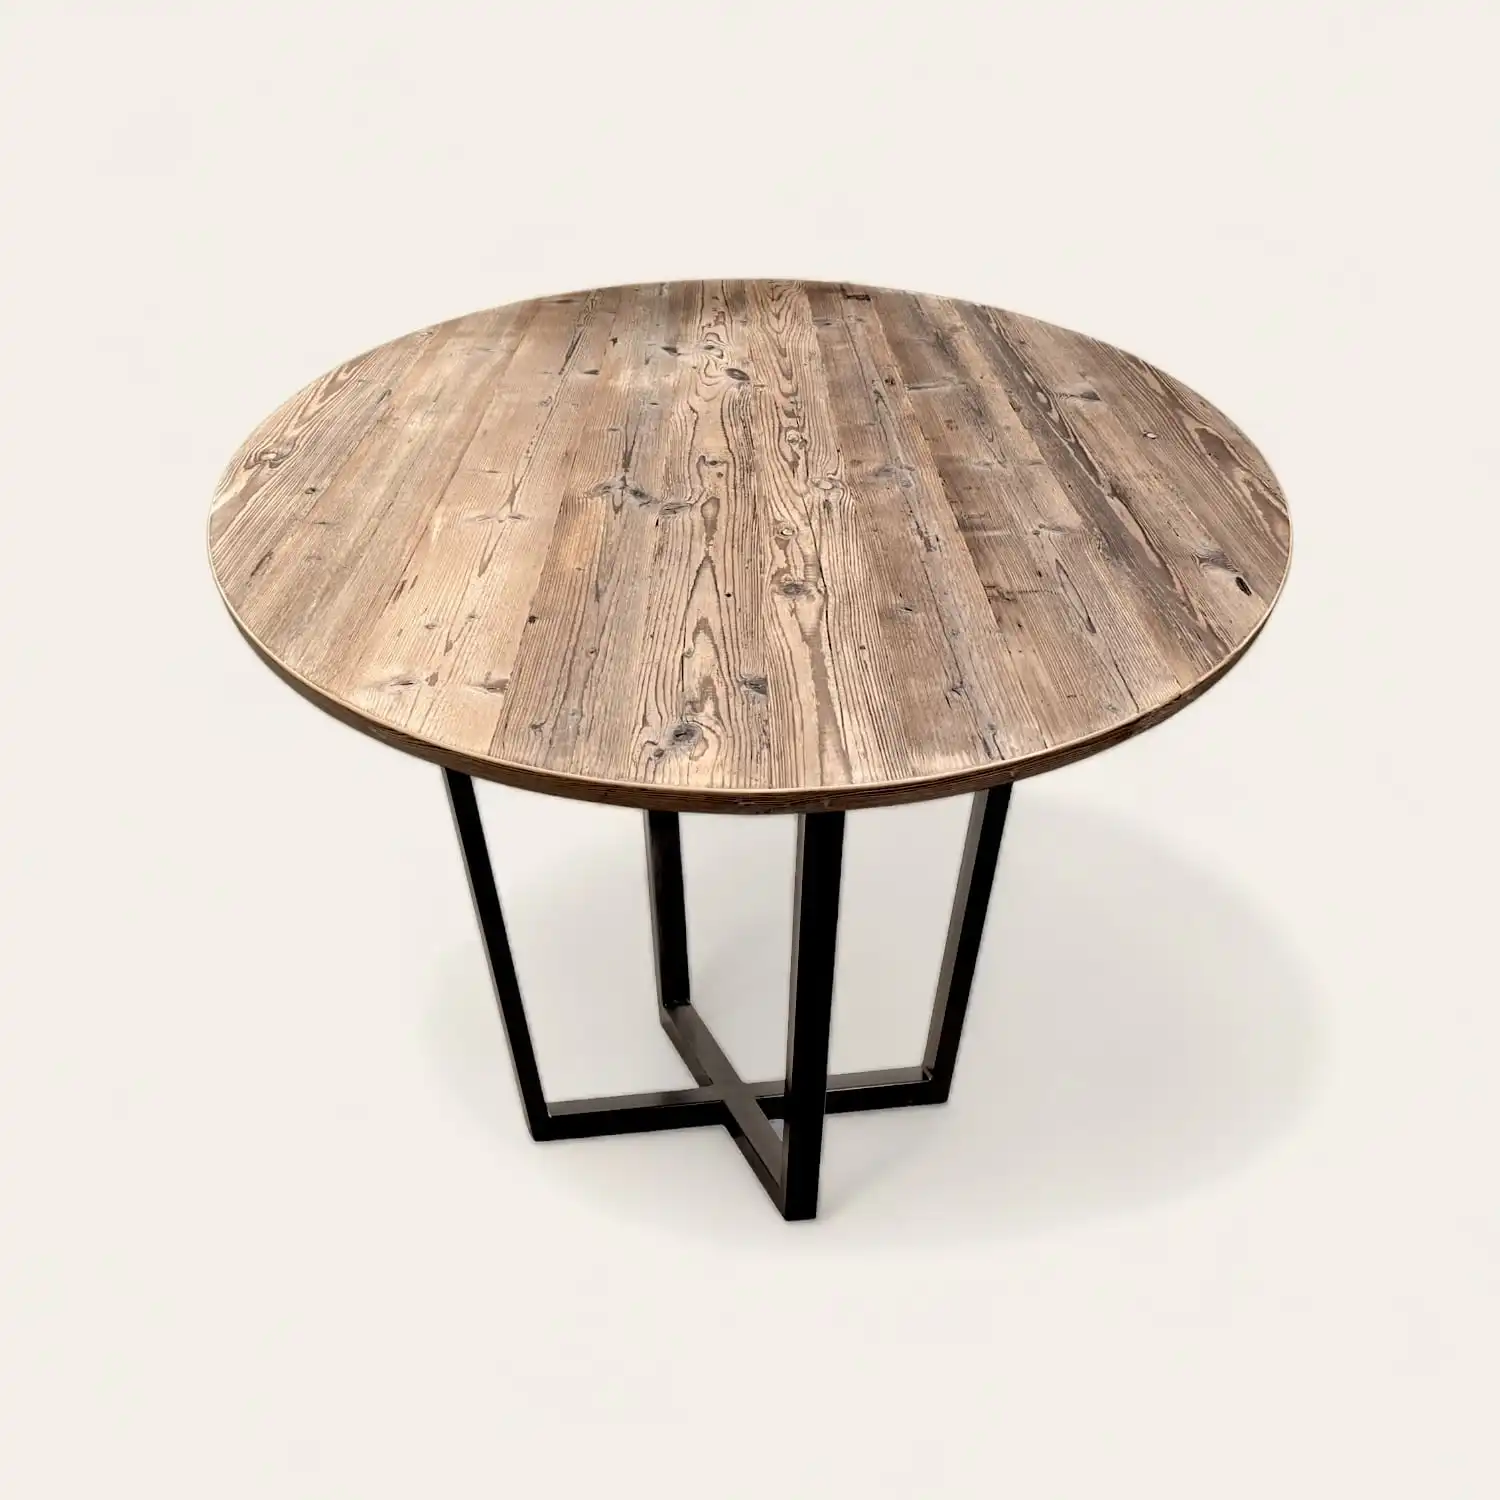  Une table ronde en bois ancien avec un piètement en métal noir. 